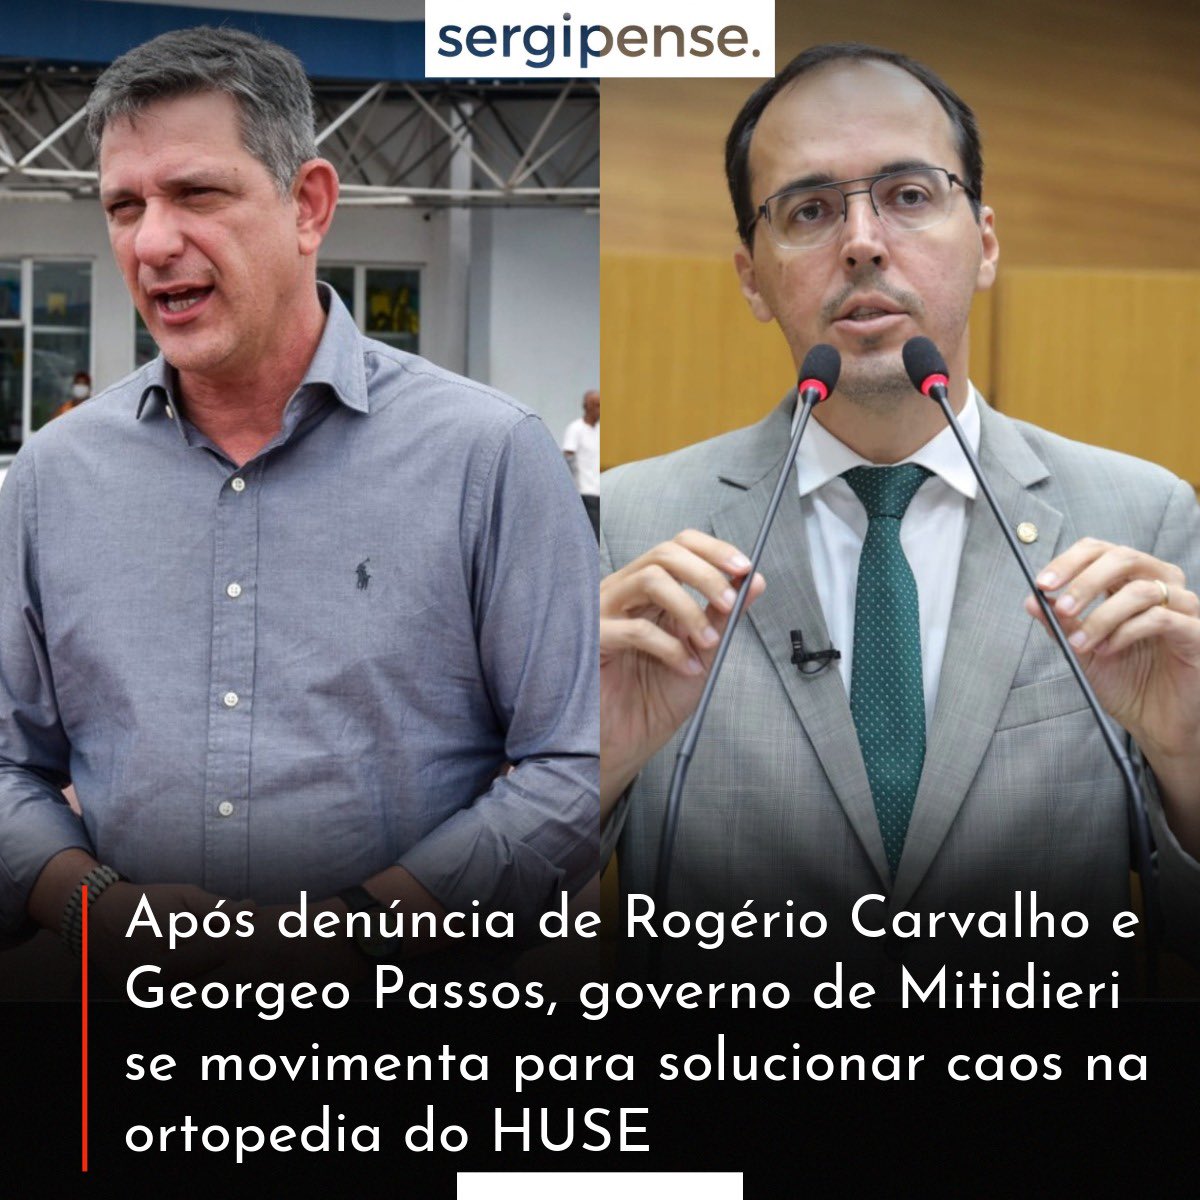 Após denúncia de Rogério Carvalho e Georgeo Passos, governo de Mitidieri se movimenta para solucionar caos na ortopedia do HUSE